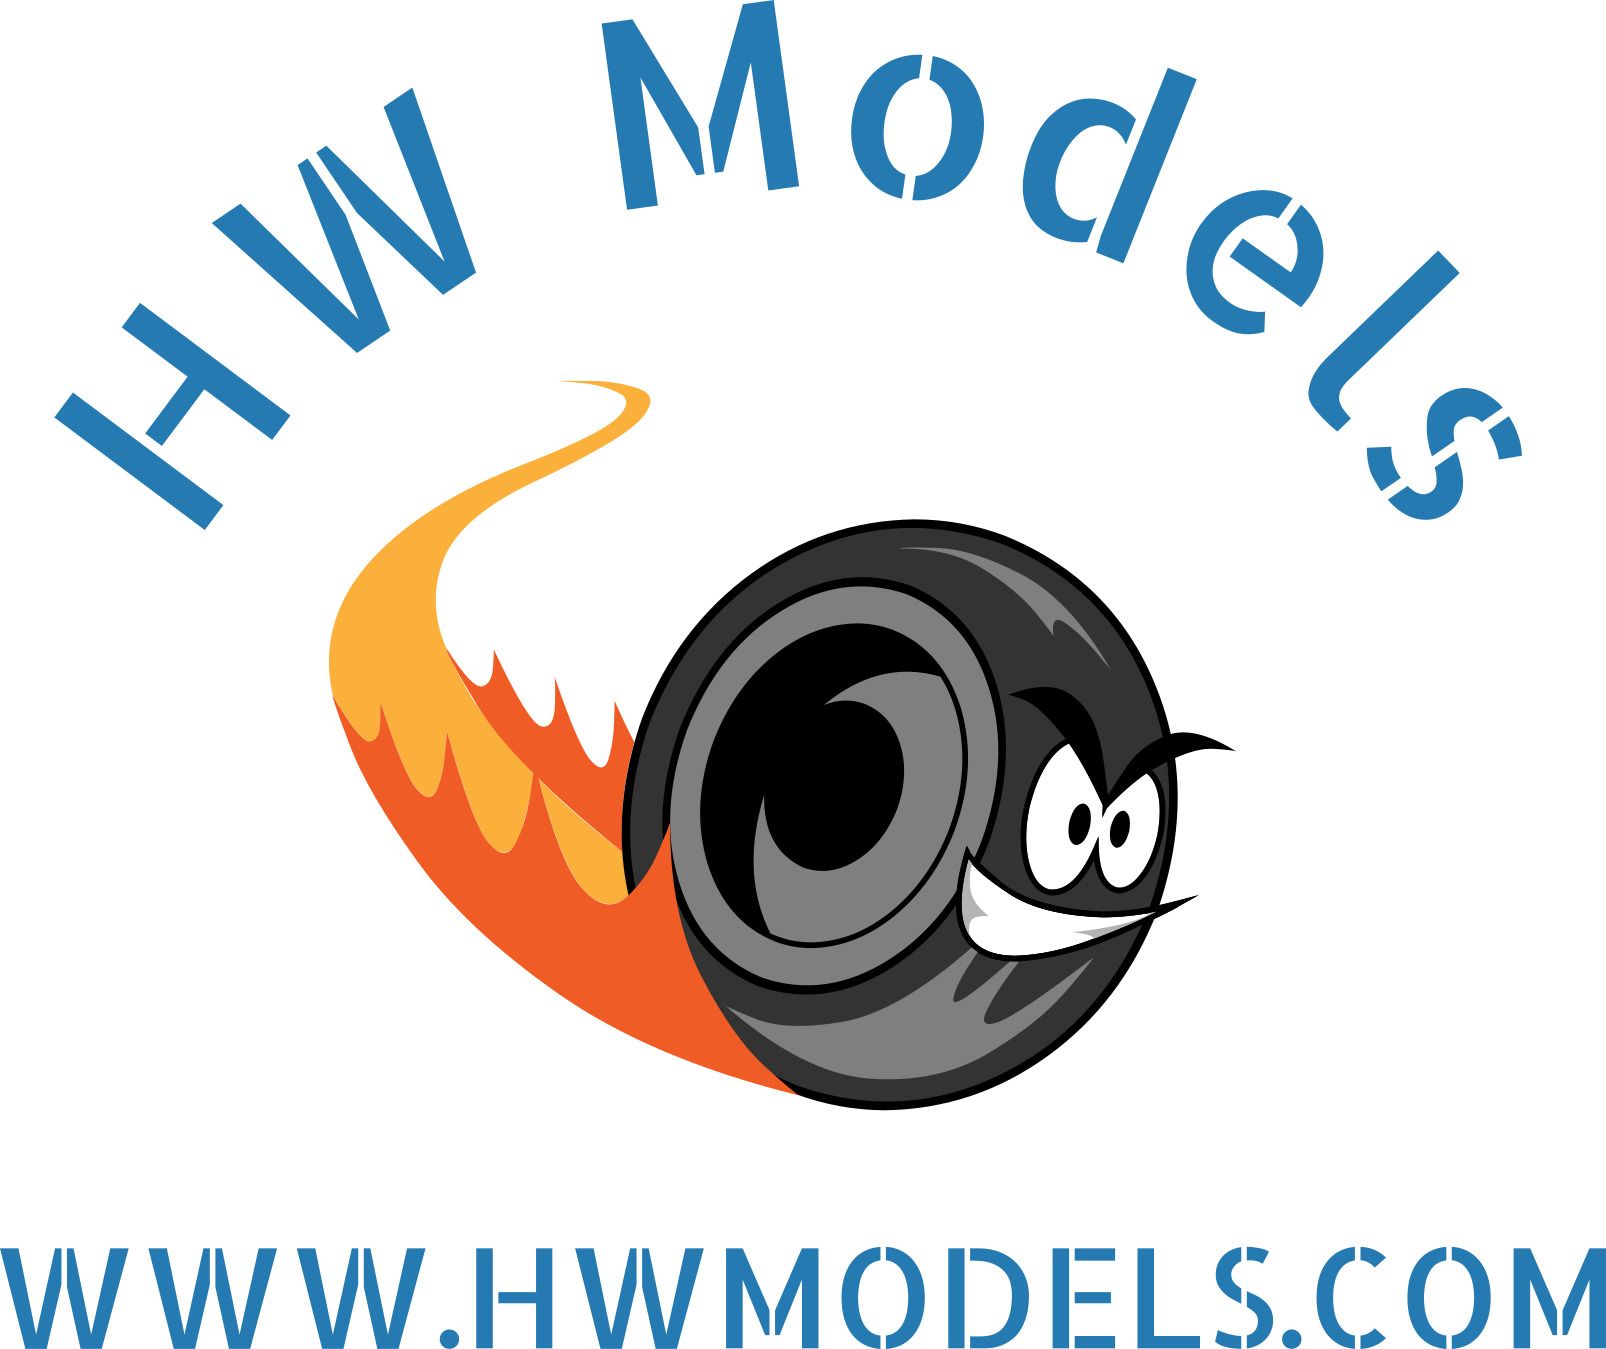 HW Models Ltd